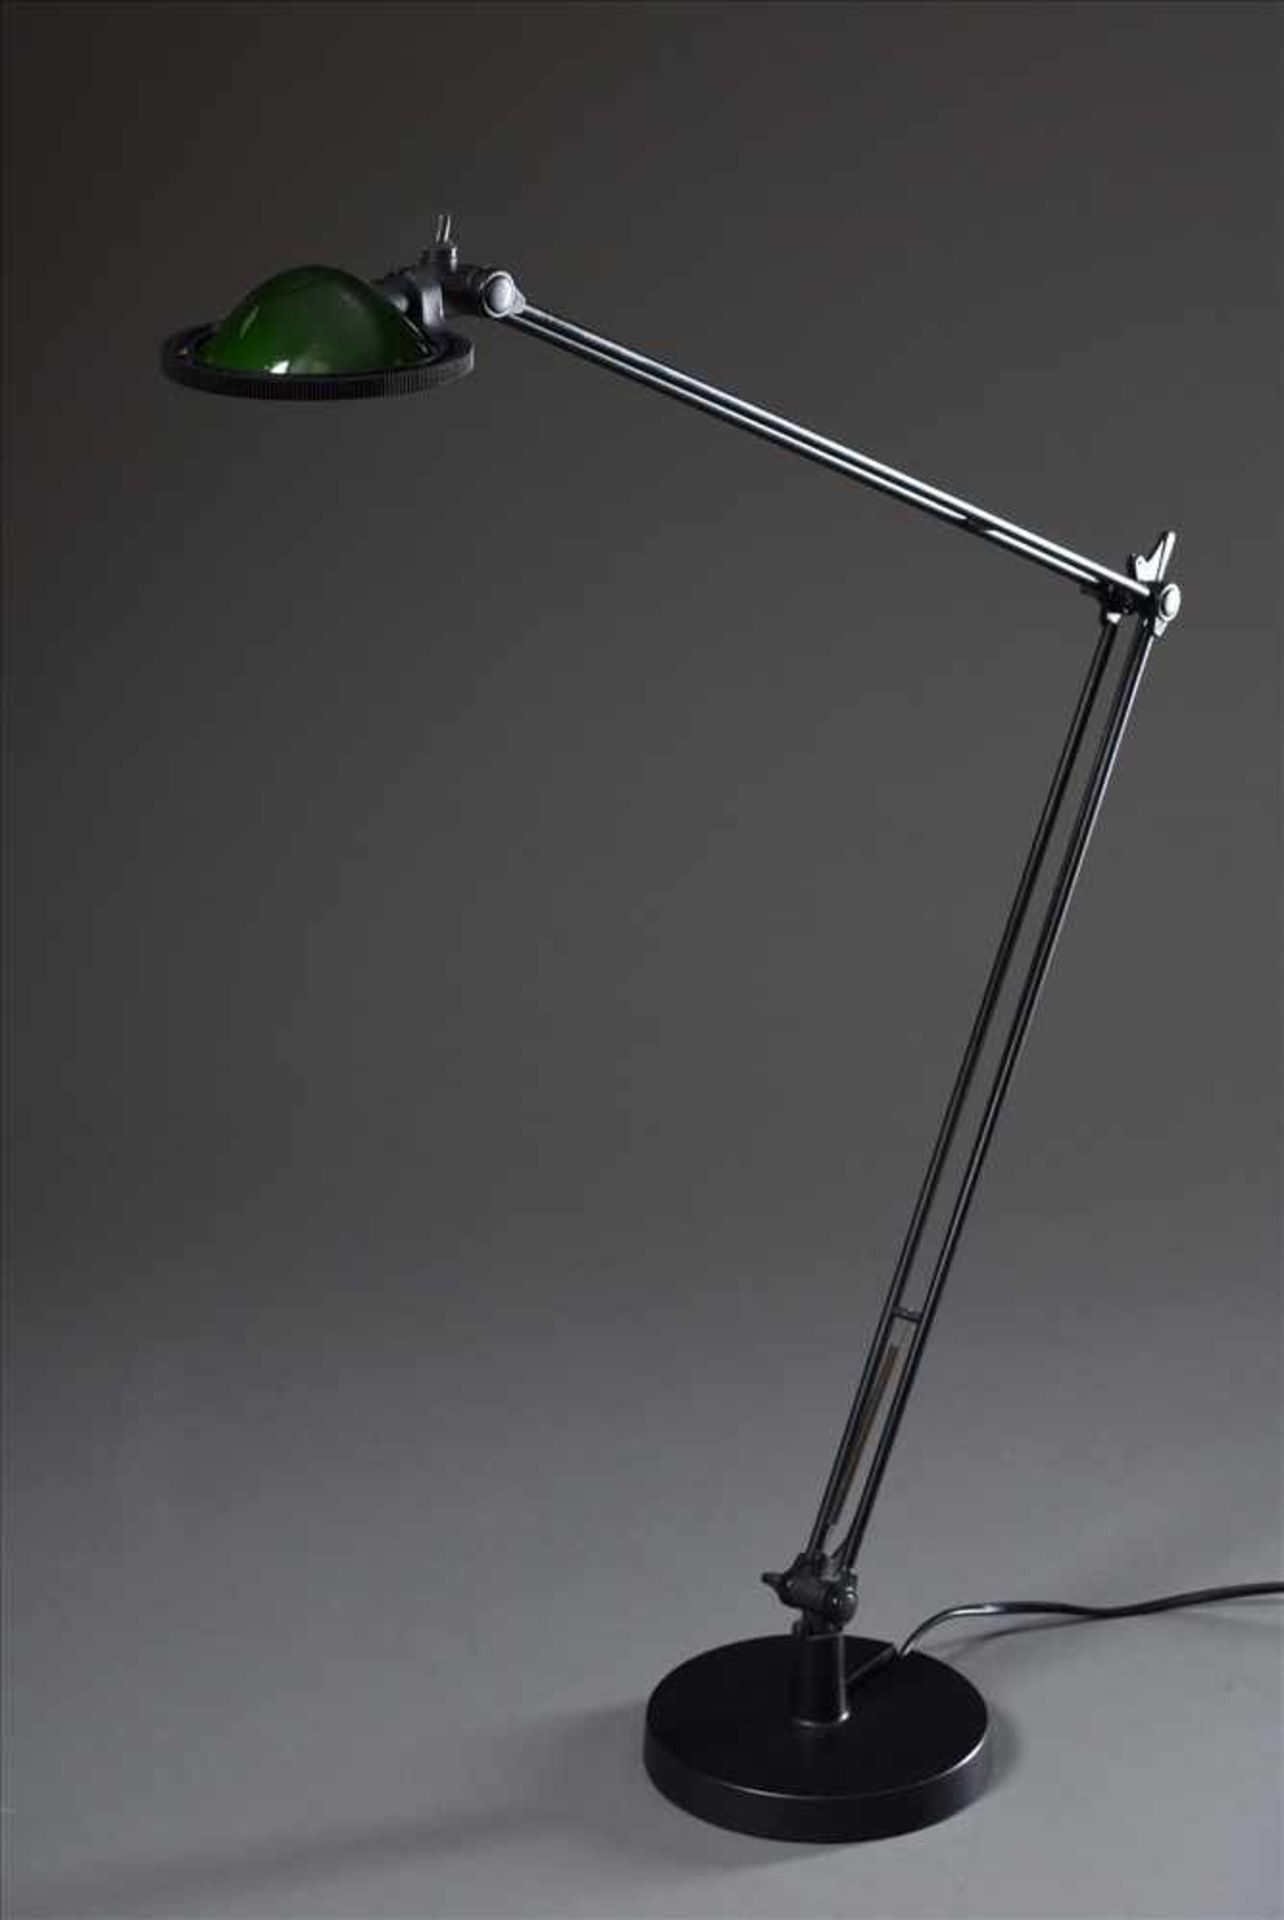 Schreibtischlampe "Berenice Tavolo Grande" von Luceplan mit grünem Reflektor, Armlänge 45+45cm,